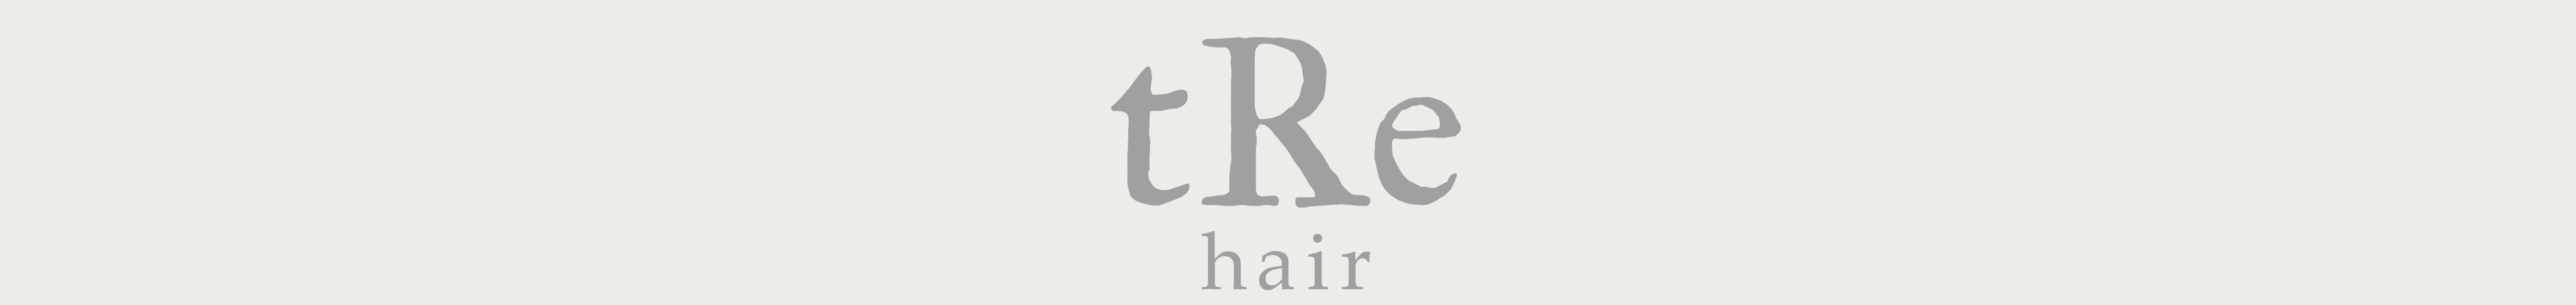 tRe hair nijo logo